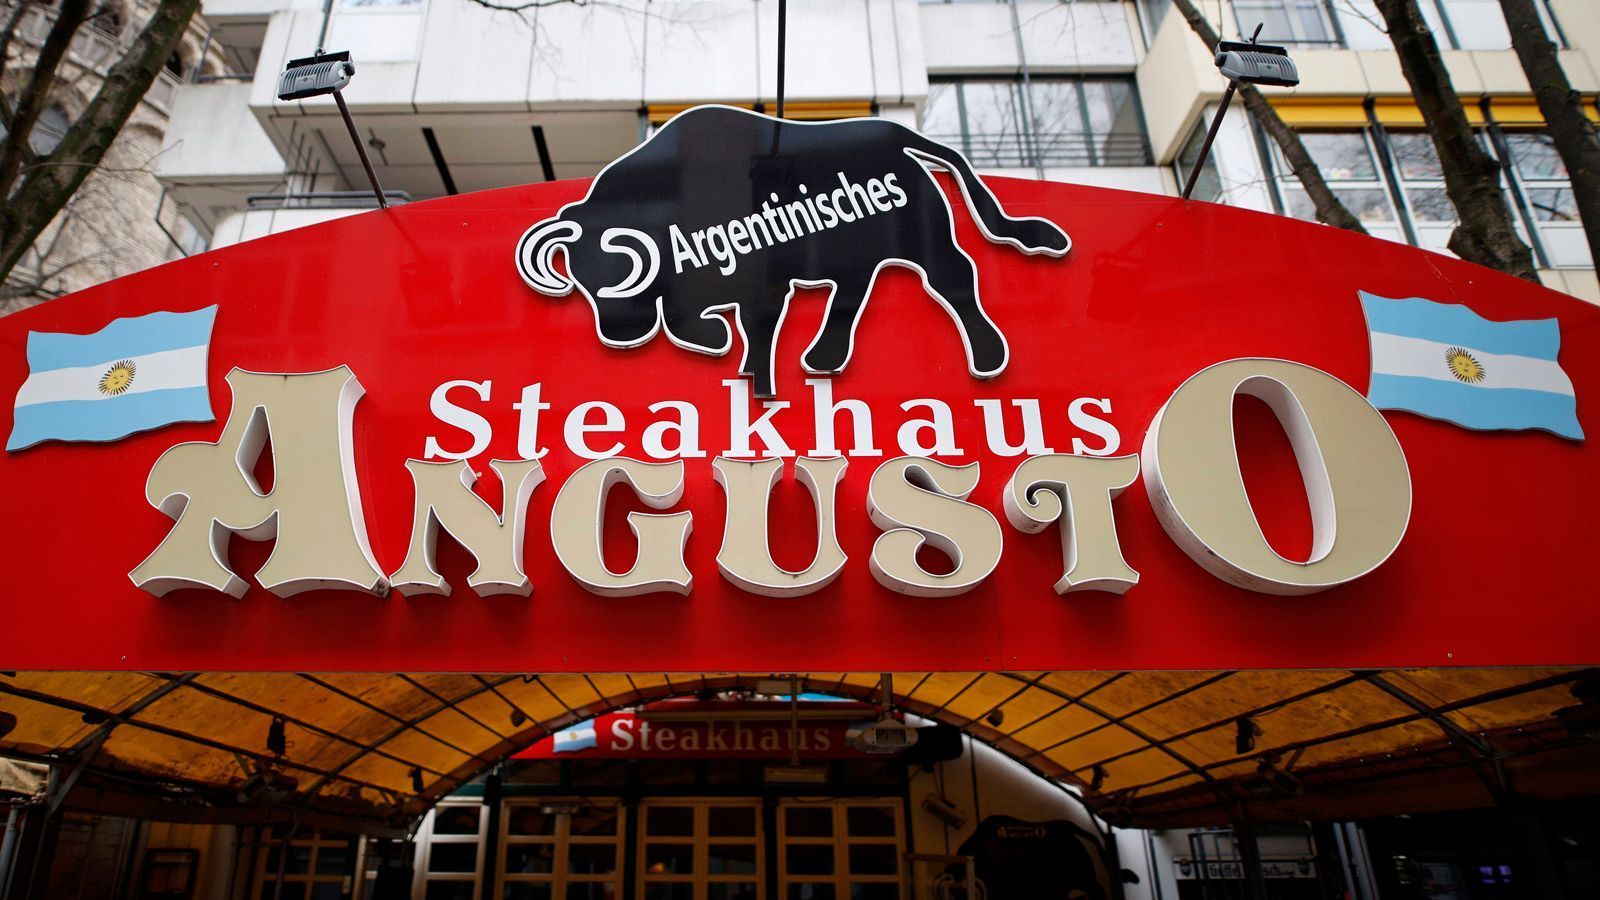 
                <strong>Steaks</strong><br>
                Argentinier sind verrückt nach Fleisch, und zwar nach Rindfleisch. Und das gerne gegrillt. Das beste Steak gibt es in Argentinien, und wir können hier dank der Steakhäuser daran partizipieren. Wer braucht schon Baguettes?
              